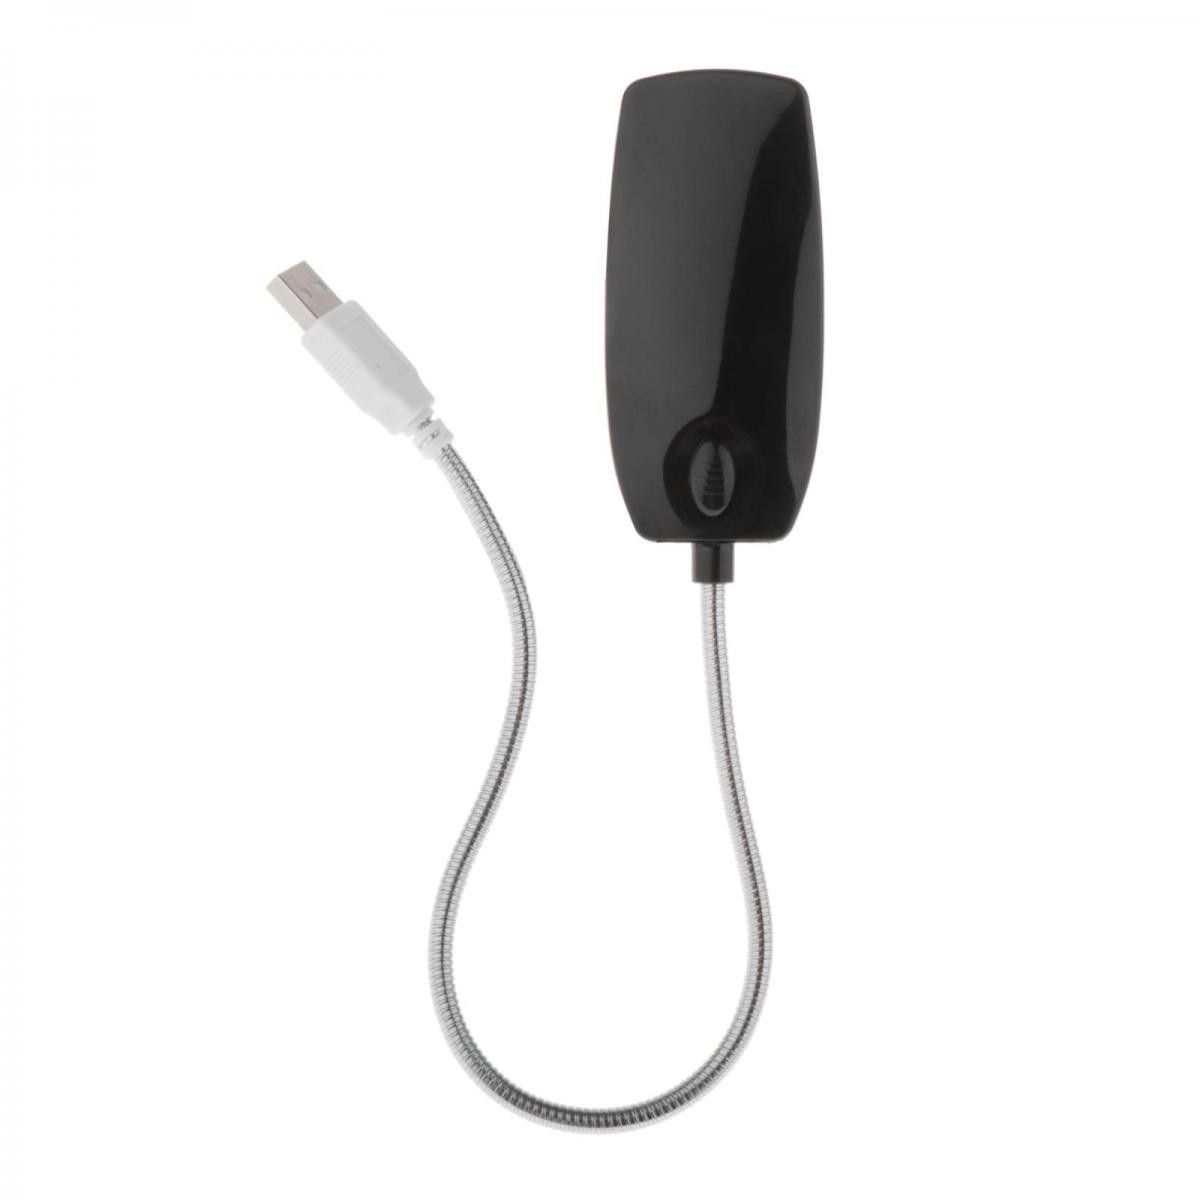 USB portable lampe 28 DEL col de cygne pour ordinateur portable PC Mac Ordinateur lumière Nuit